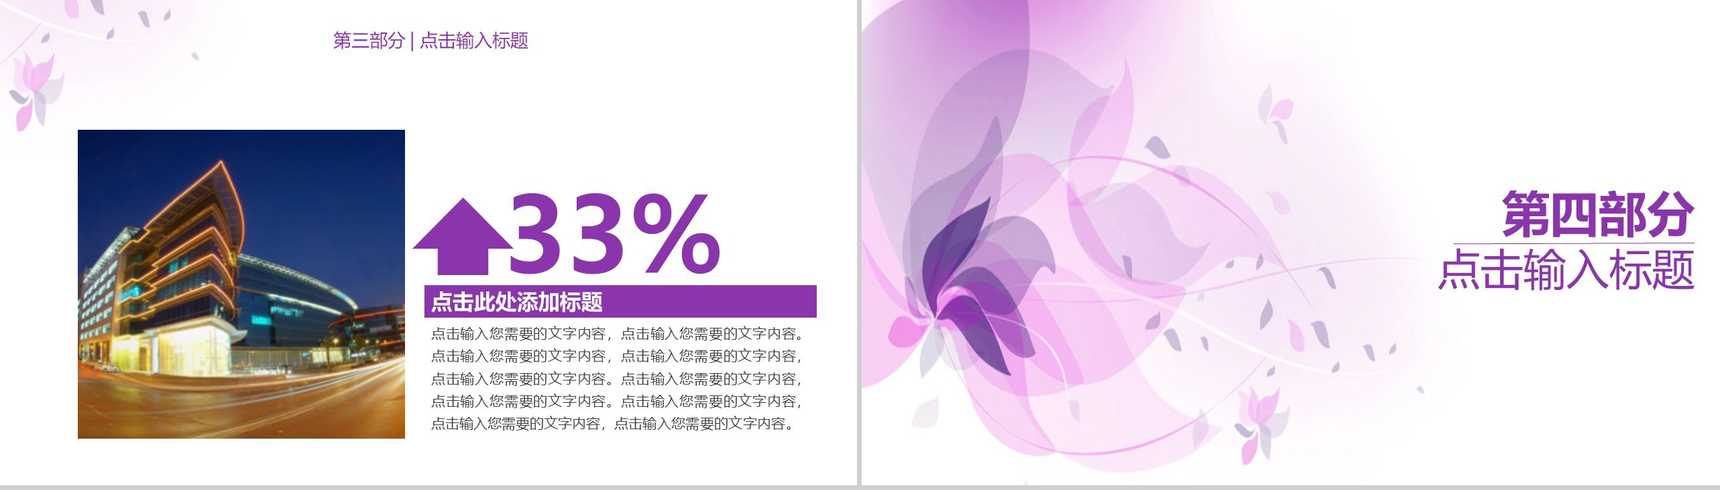 浅紫色简约唯美商务风企业宣传PPT模板-8